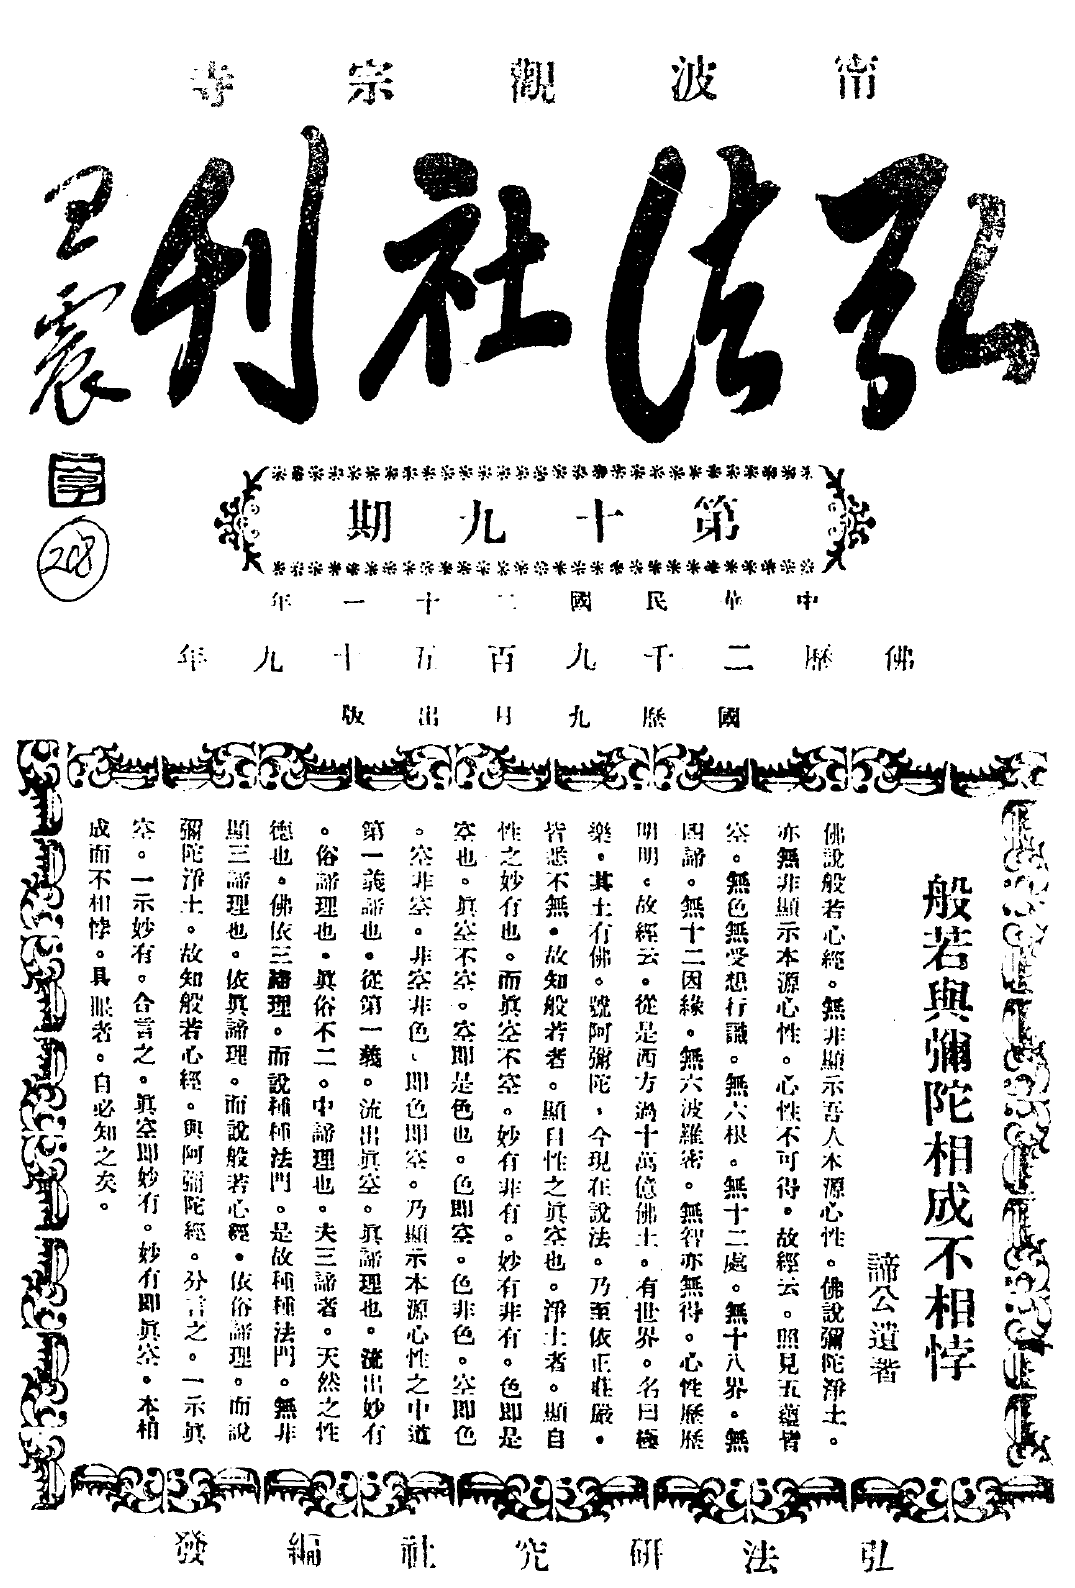 Hongfa shekan cover.png